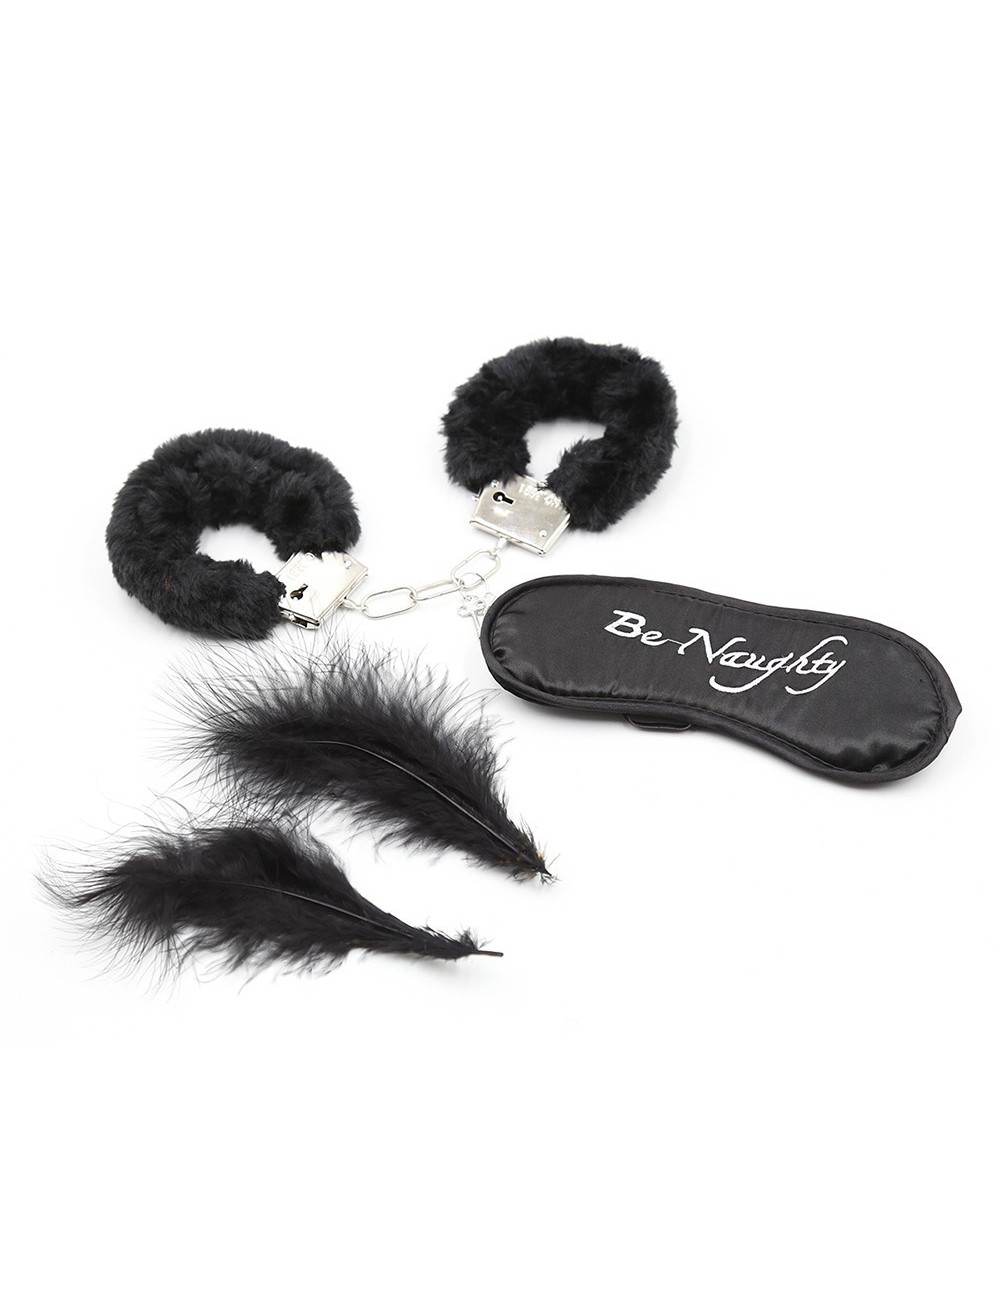 Sextoys - Accessoires - Set d'accessoires noire pour vos soirée BDSM - 332400006 - Dreamy Fetish